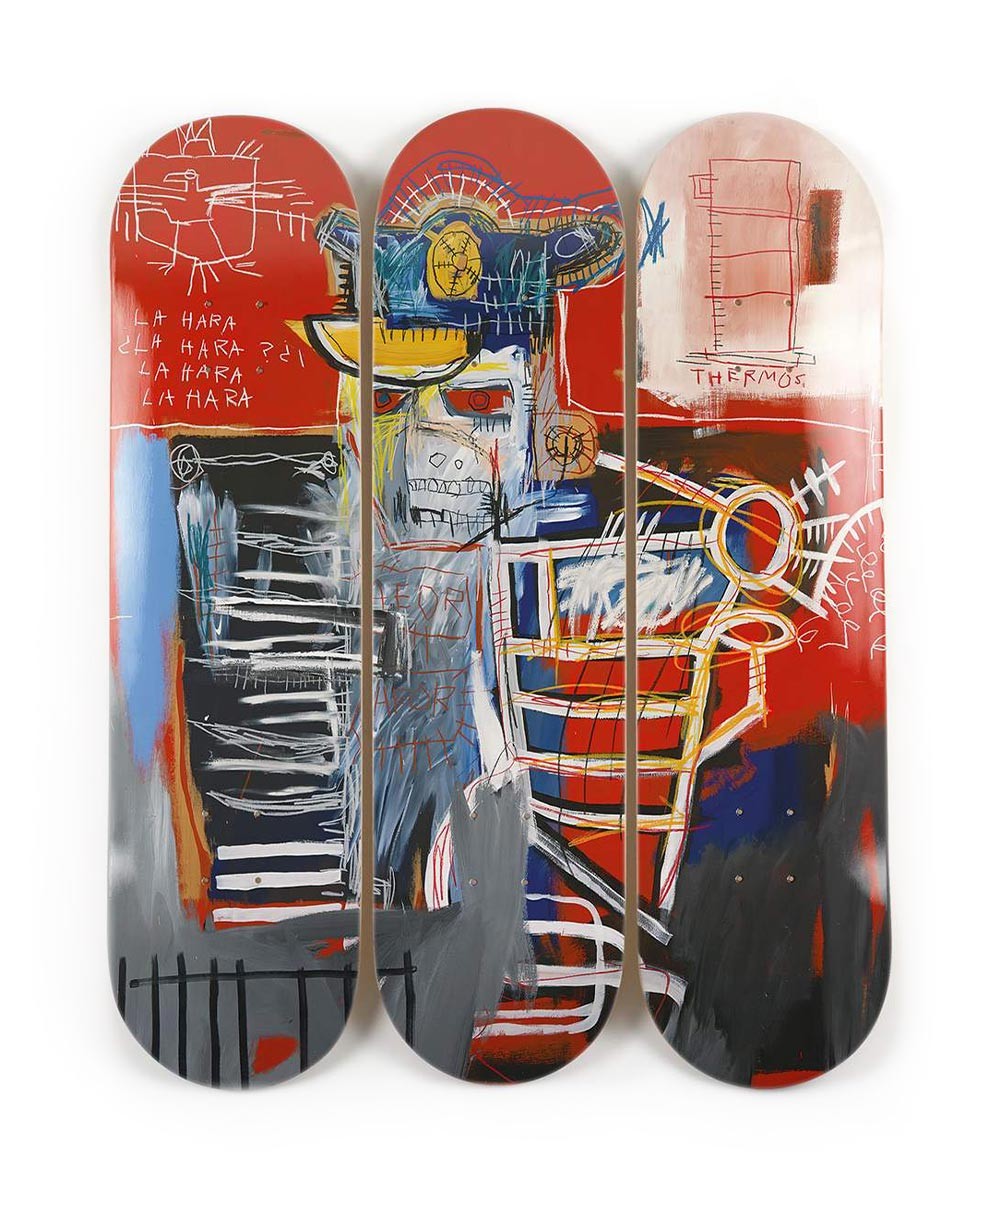 Produktbild "La Hara" designed by Jean-Michel Basquiat von The Skateroom im RAUM Conceptstore